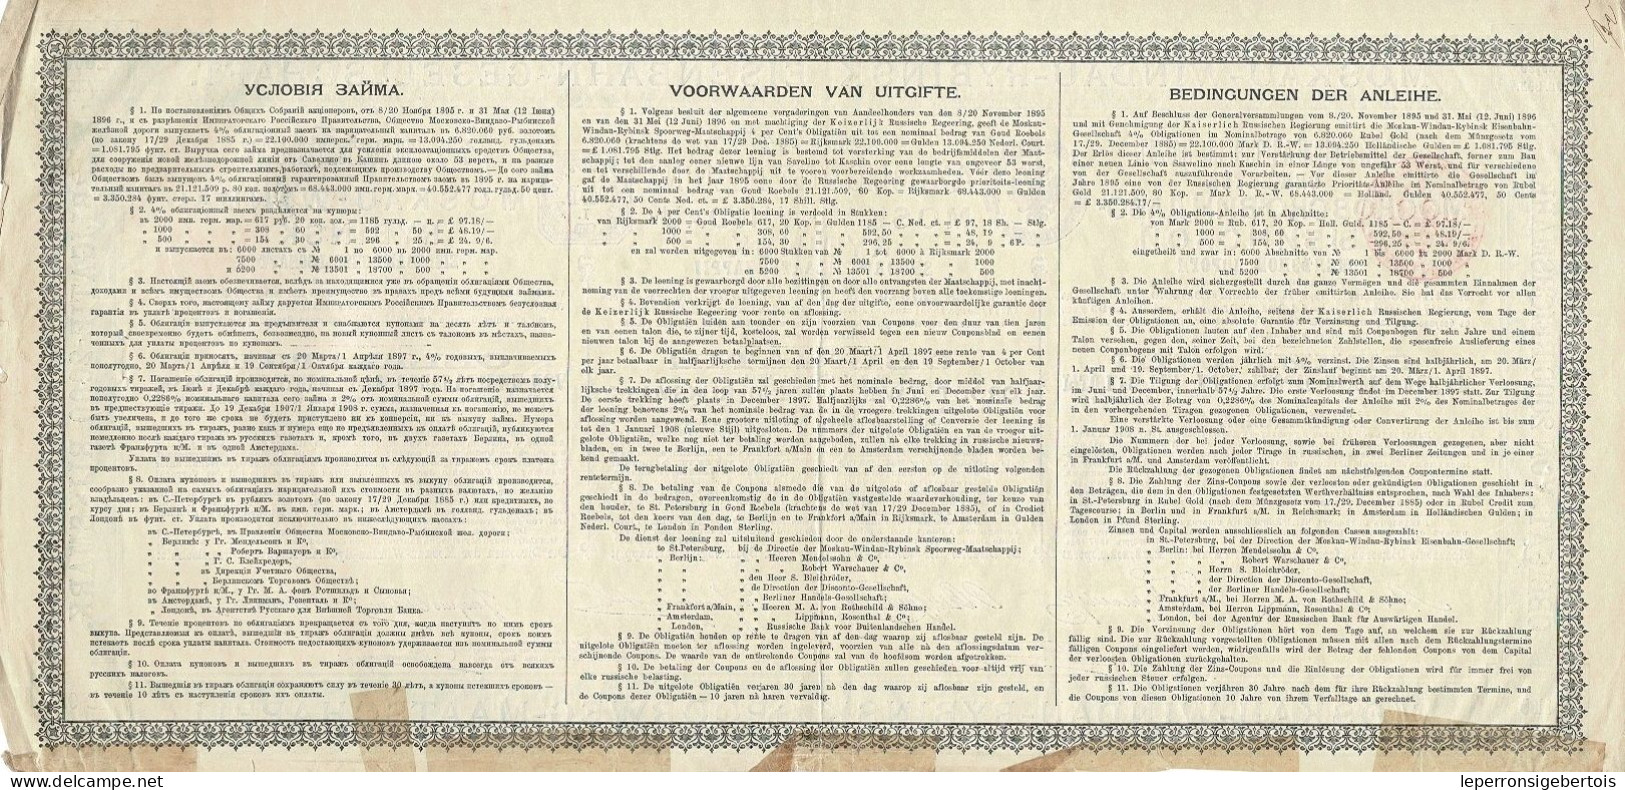 Obligation De 1907 - Obligation Mark Der Moskau-Windau-Rybinsk - Eisenbahn - Rusland